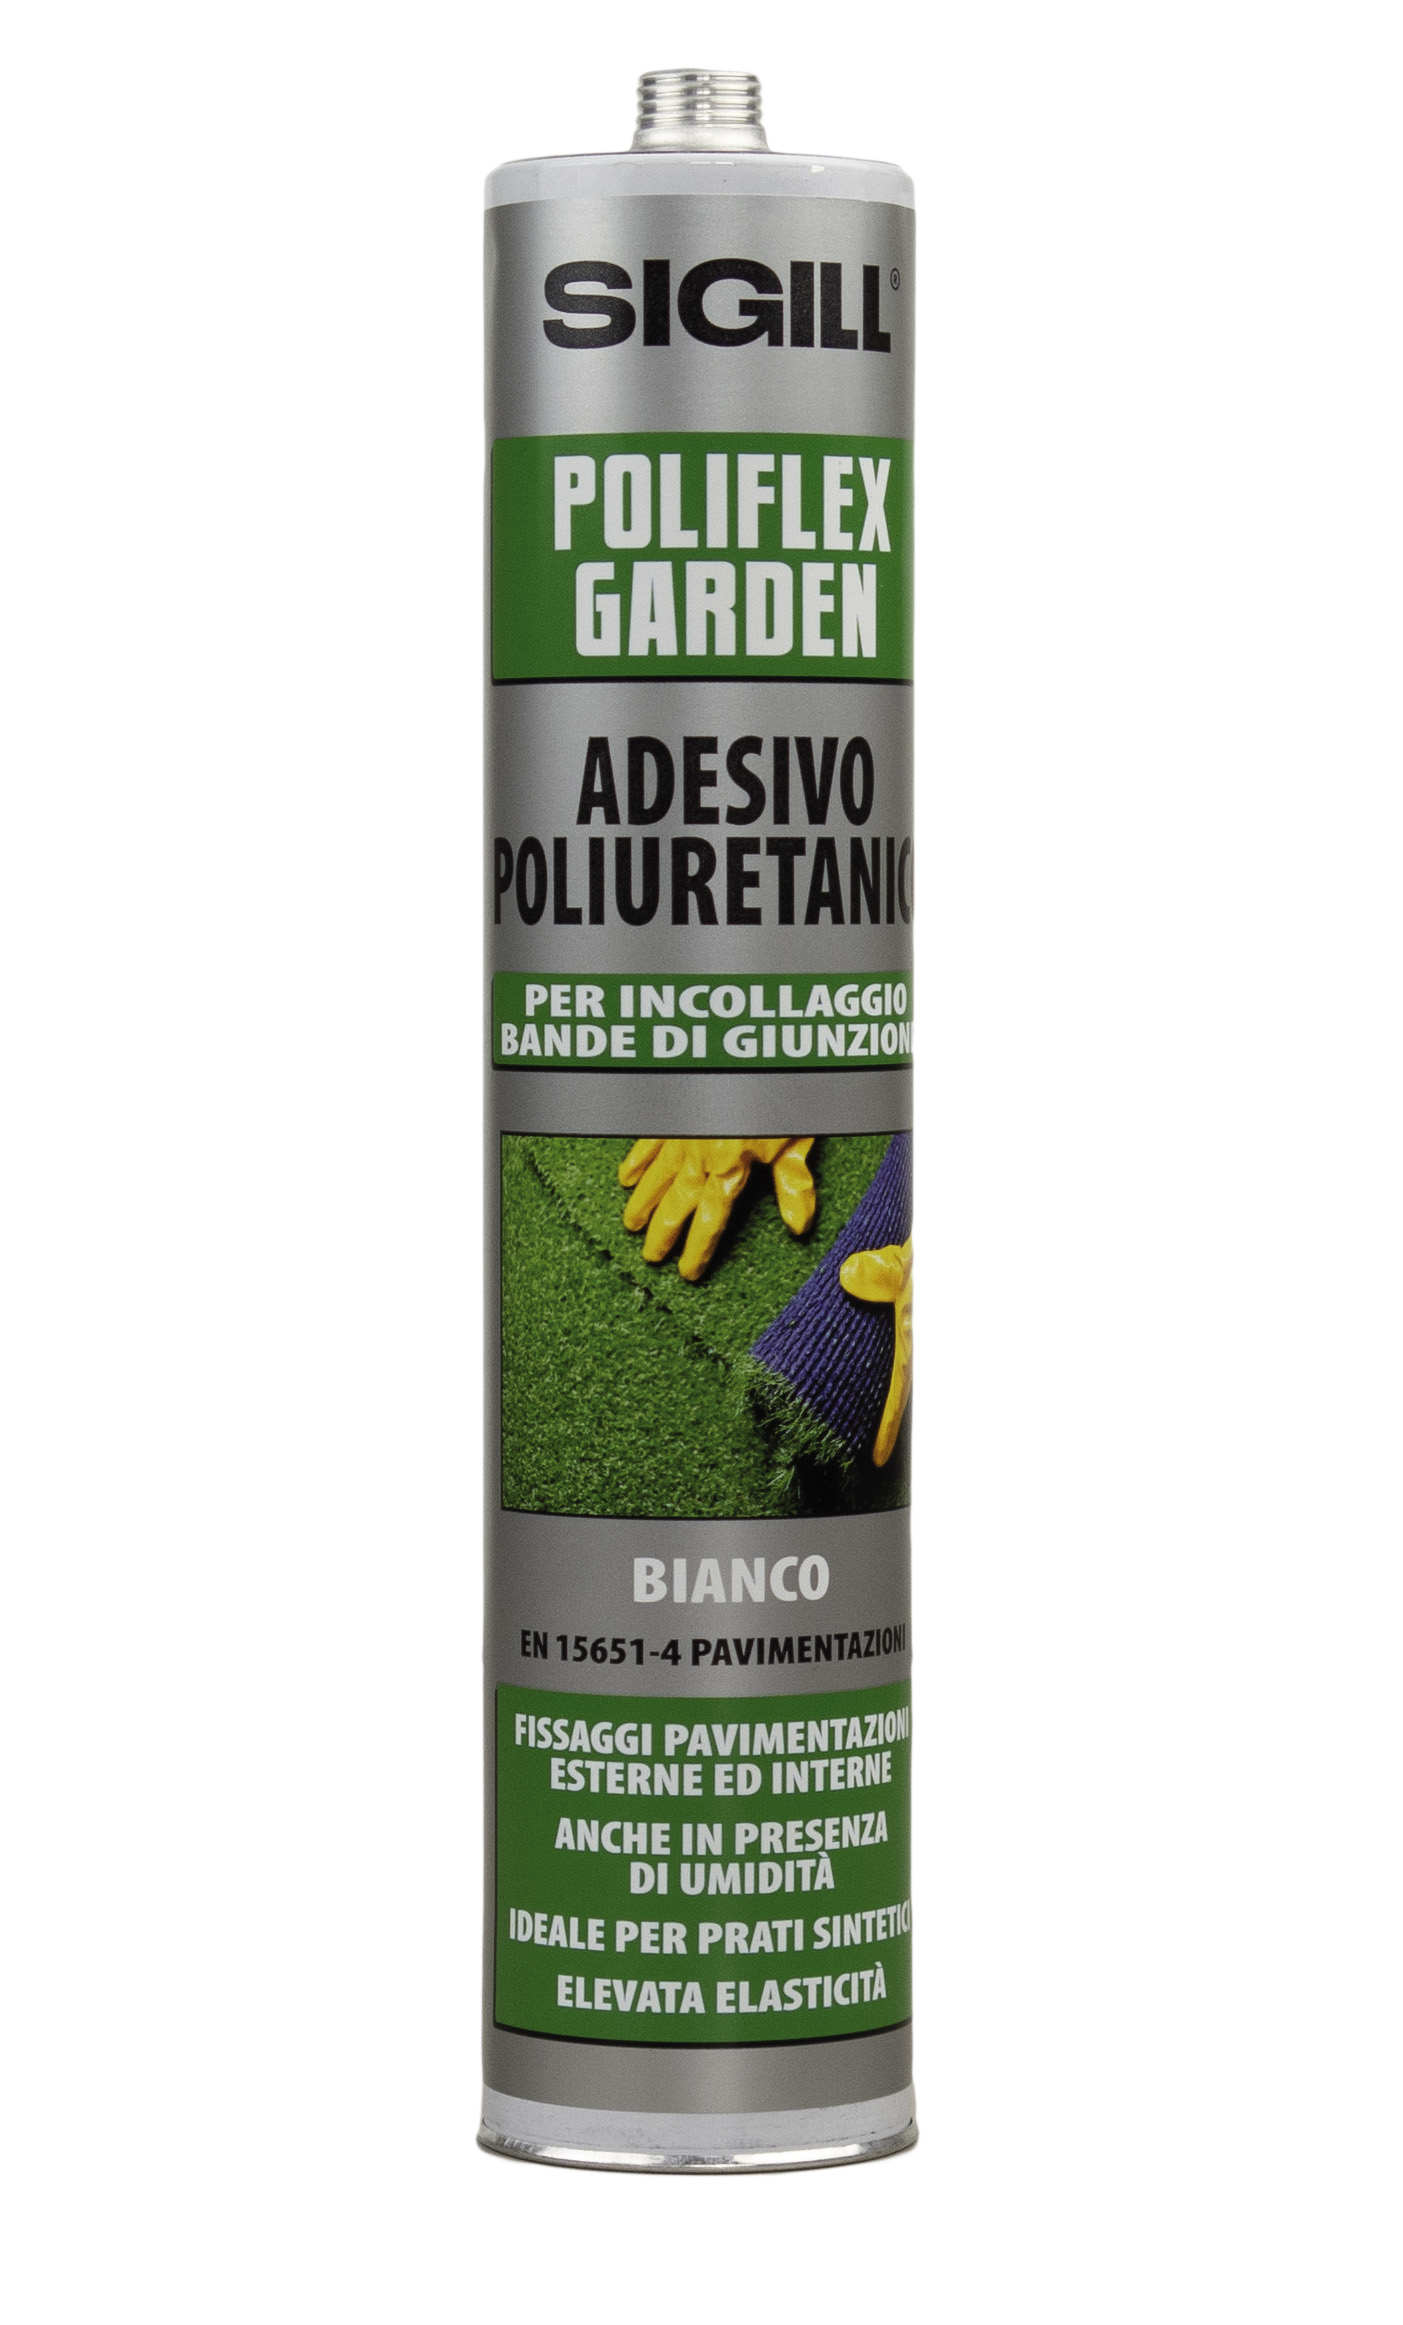 Poliflex Garden Adesivo Poliuretanico per la posa di manti di erba sintetica